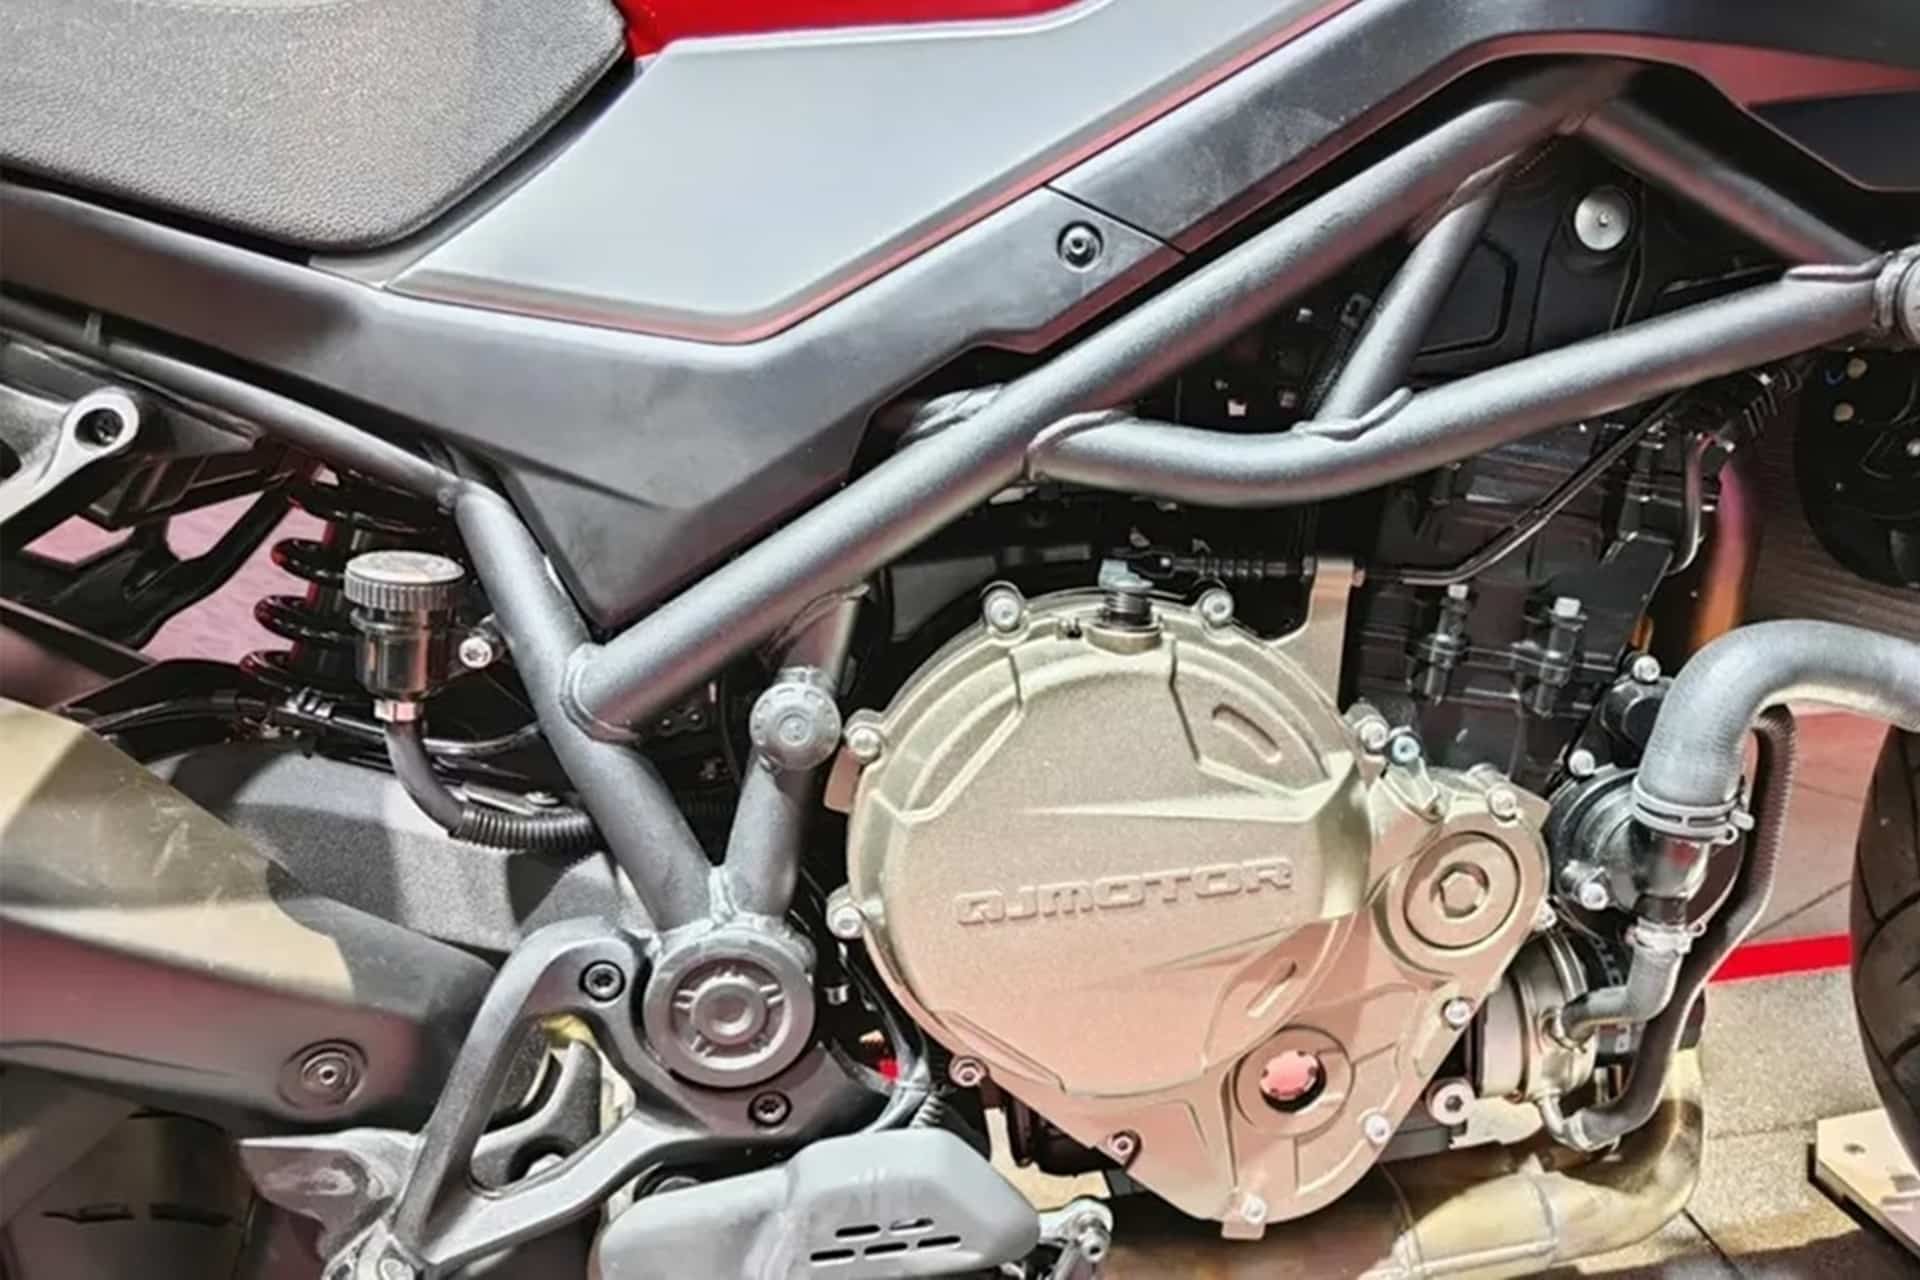 Presentada oficialmente la versión final de la SRK 900 de QJMotor